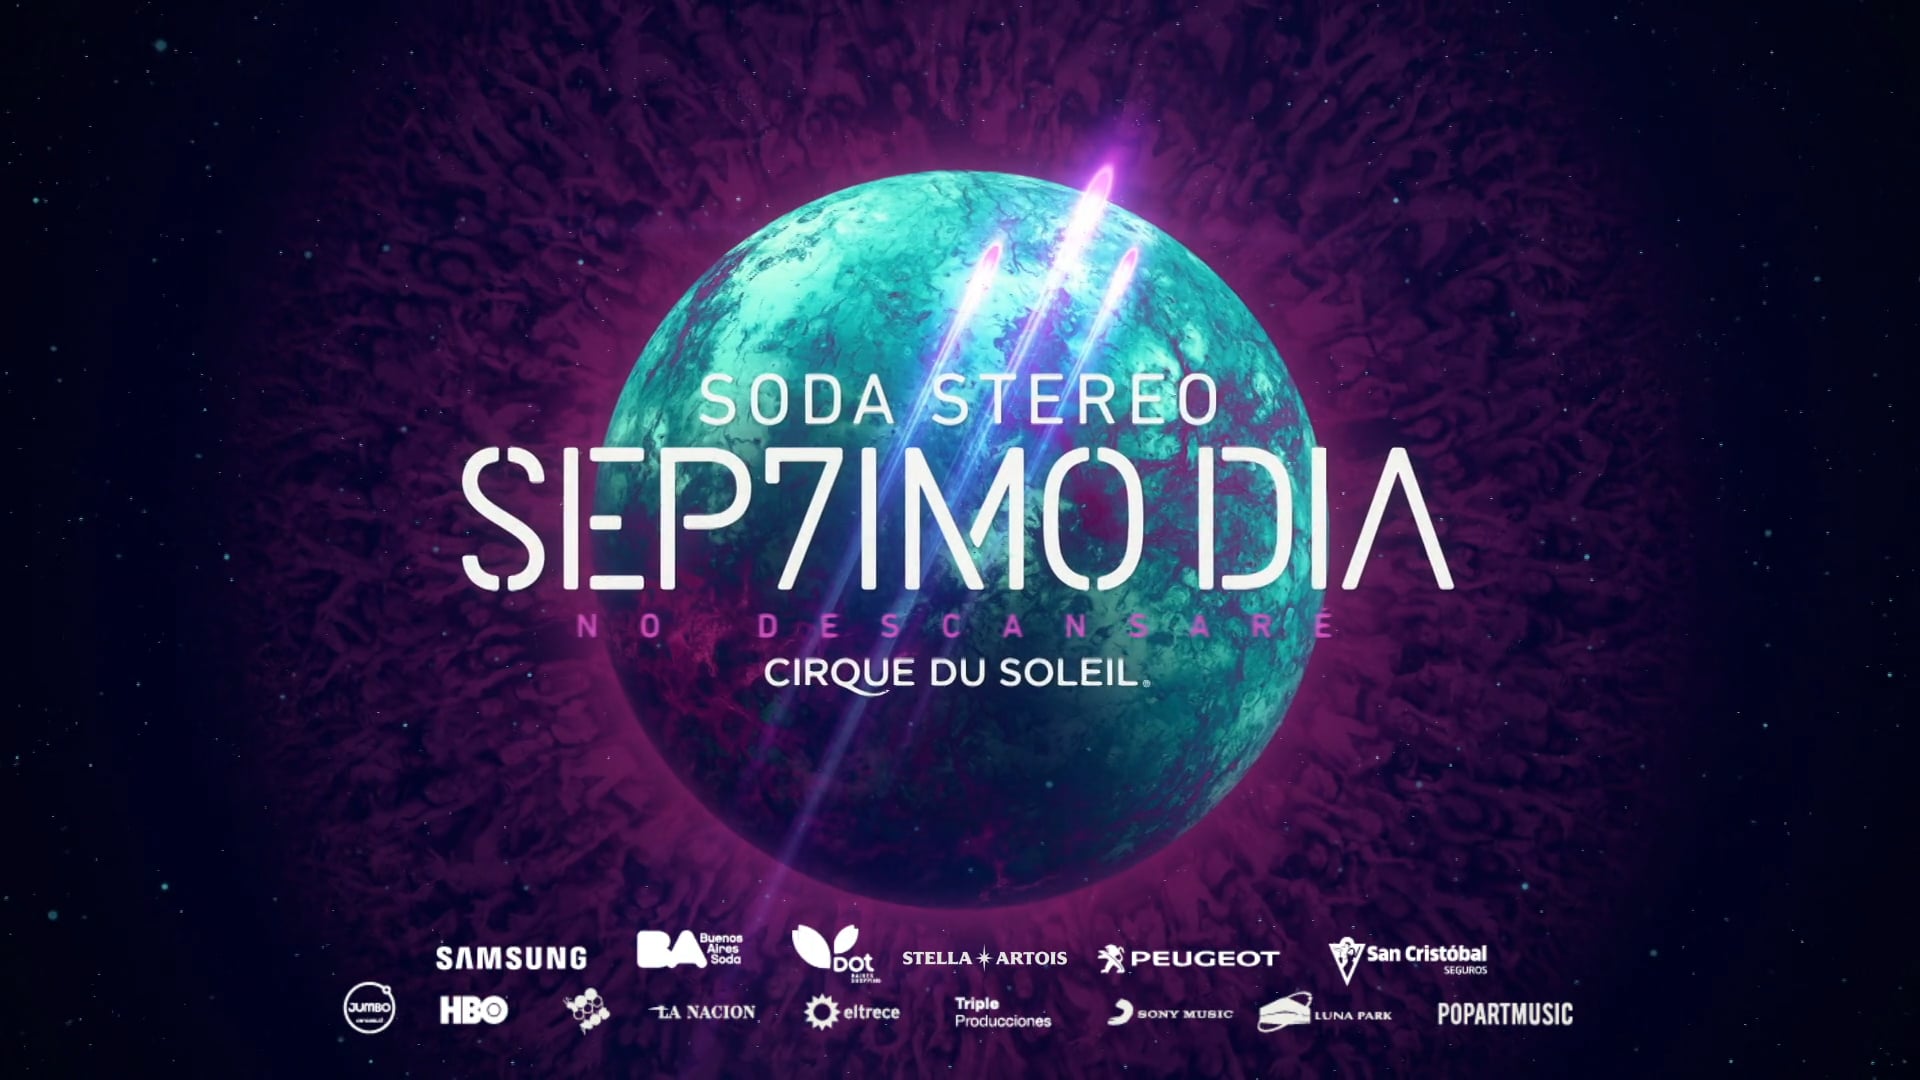 Cirque du soleil - Septimo Dia - Soda Stereo.